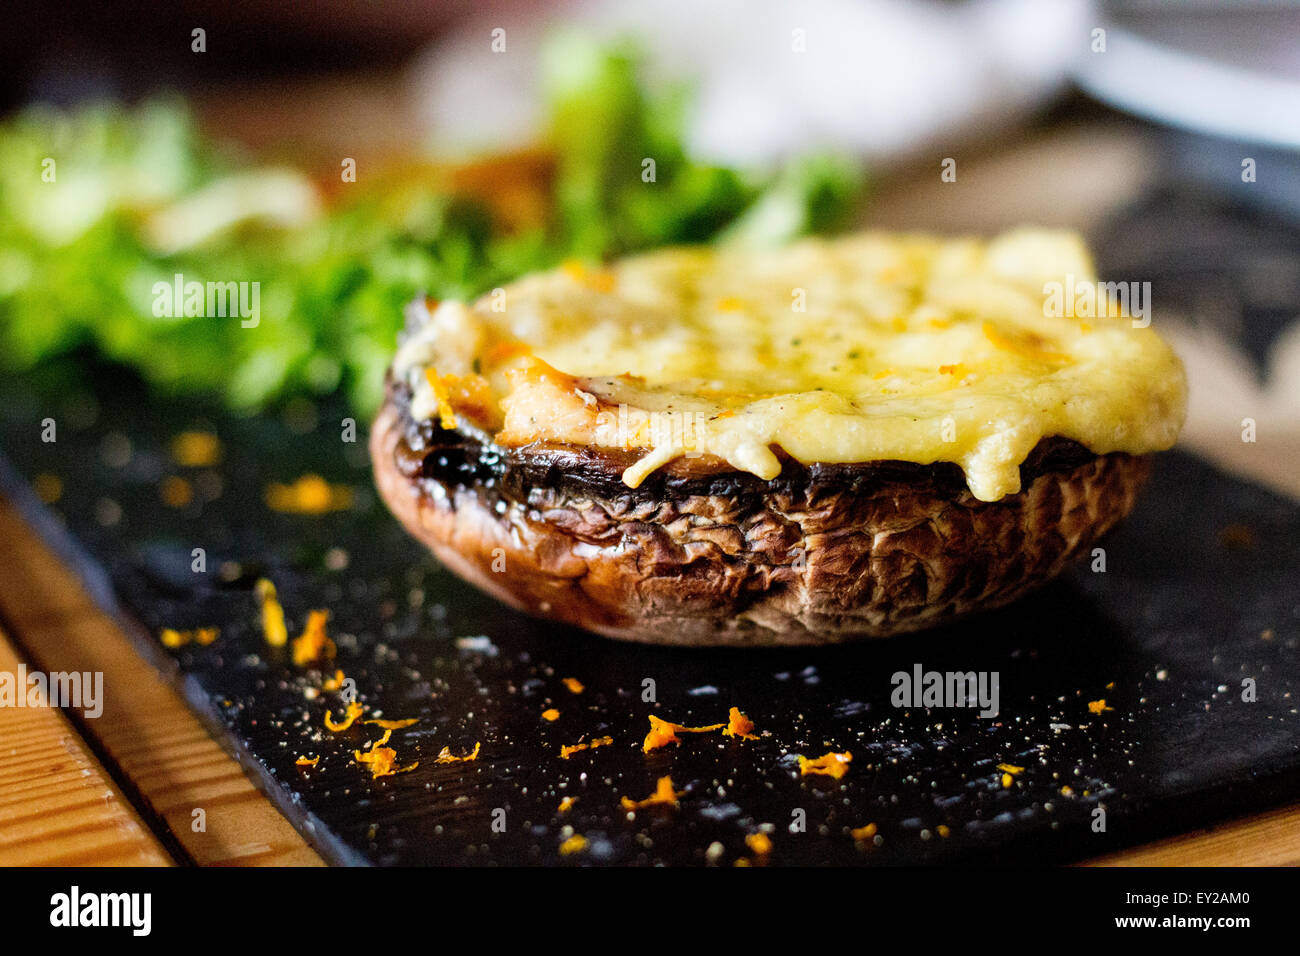 Mushroom with cheese Stock Photo